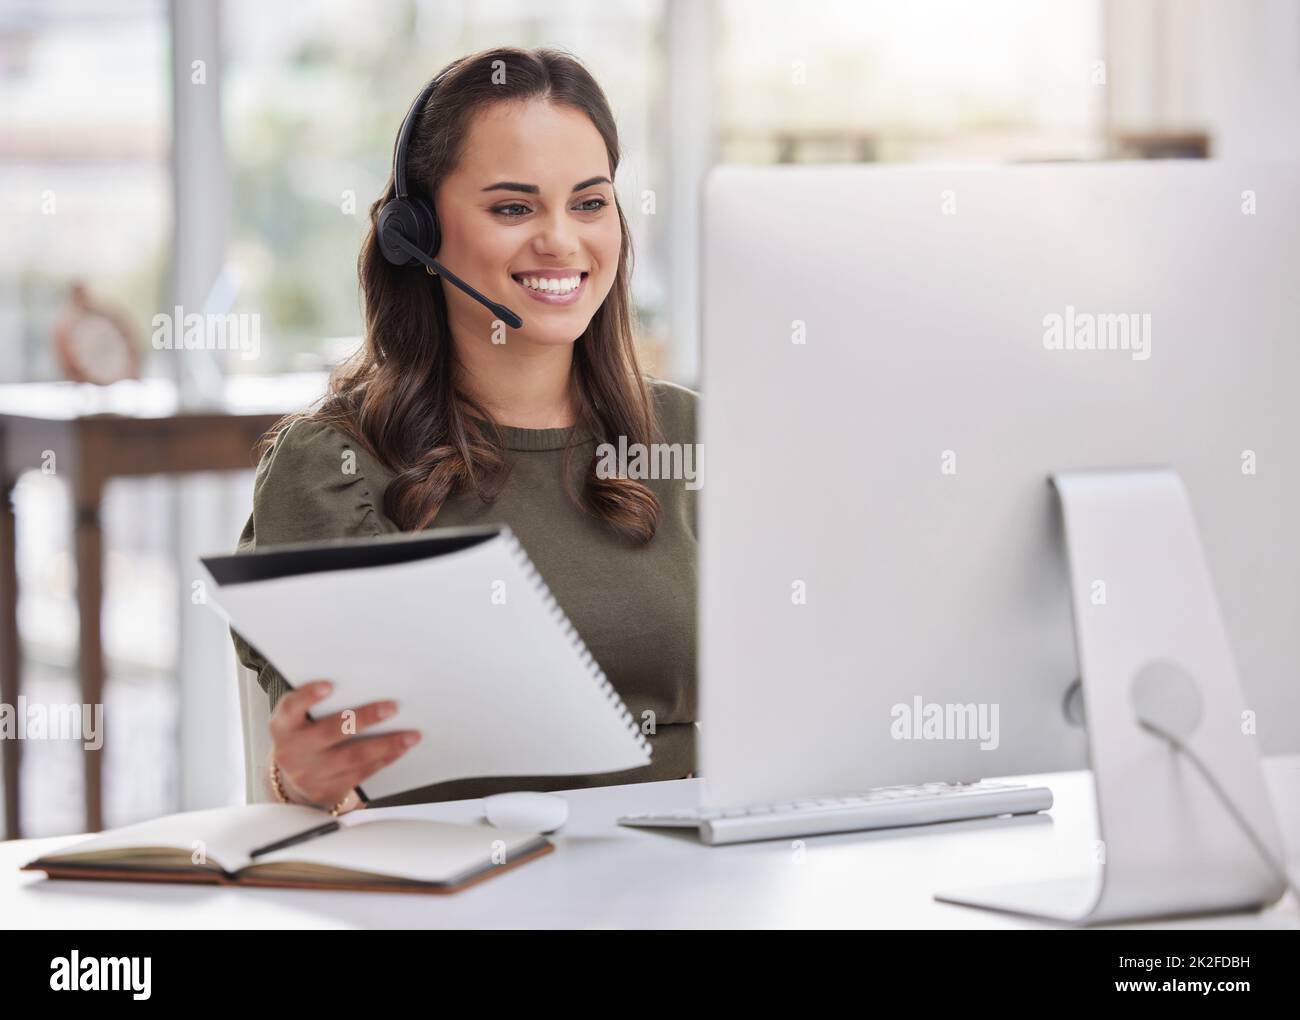 Eingabe neuer Informationen in das System. Aufnahme eines jungen Callcenter-Agenten, der während der Arbeit an einem Computer in einem Büro Papierkram durchläuft. Stockfoto